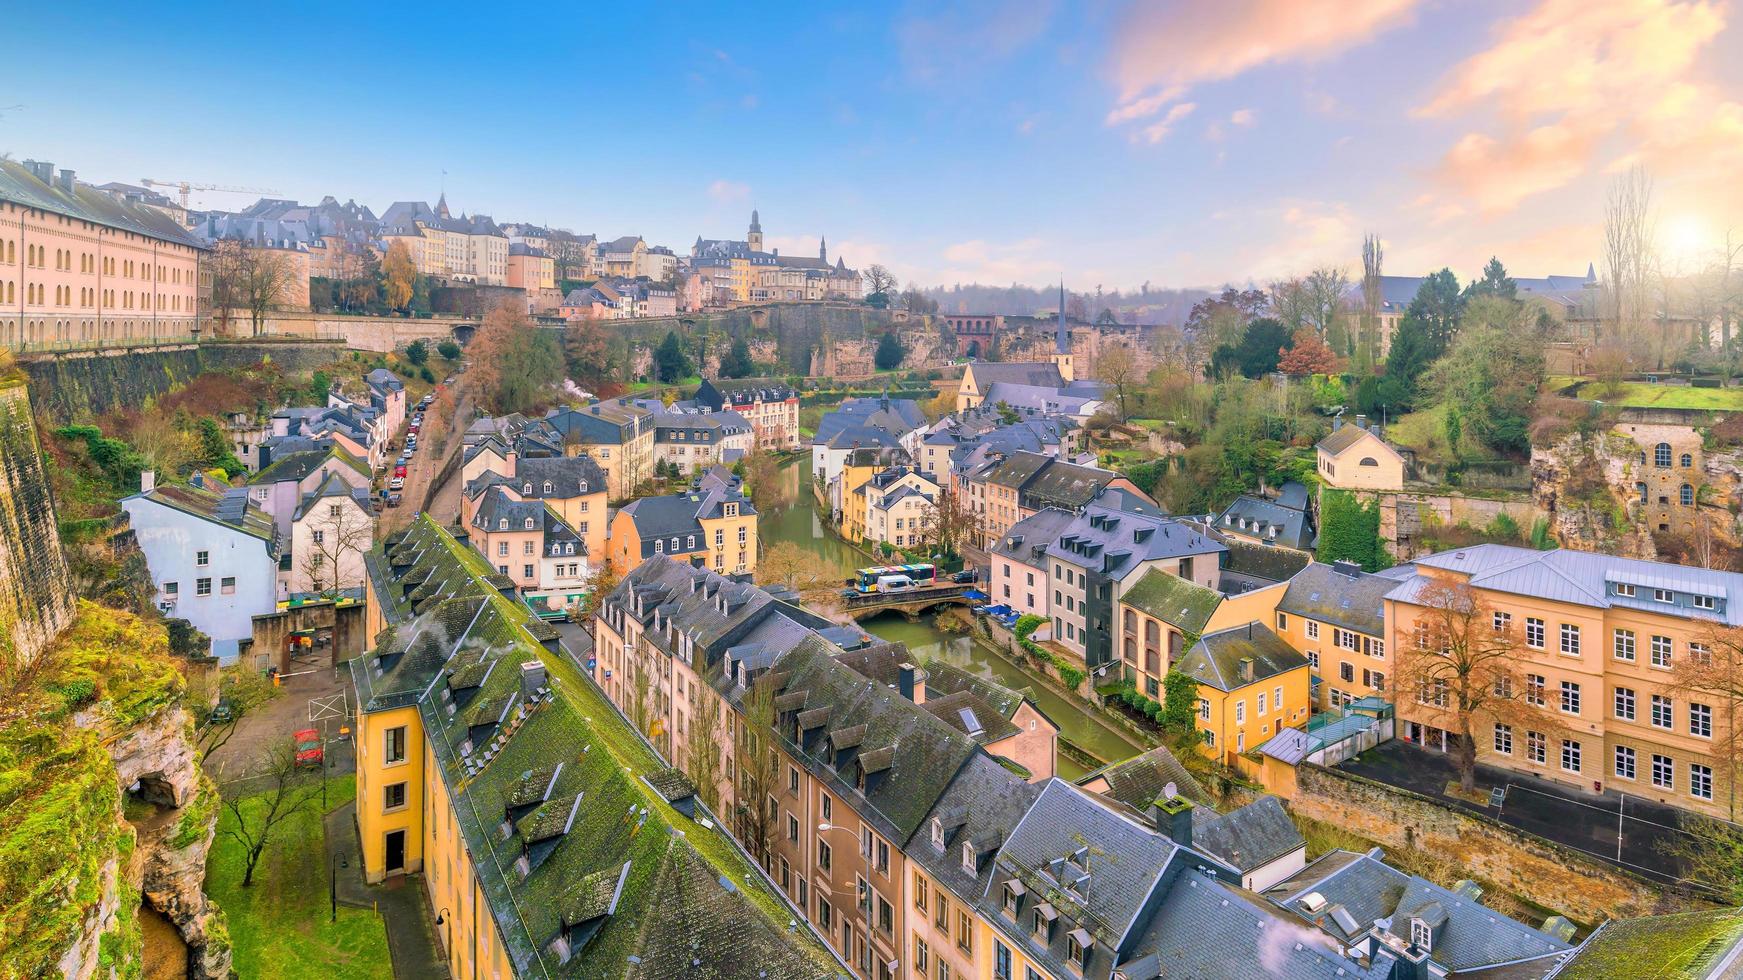 horisont av den gamla staden luxemburg stad från ovanifrån foto